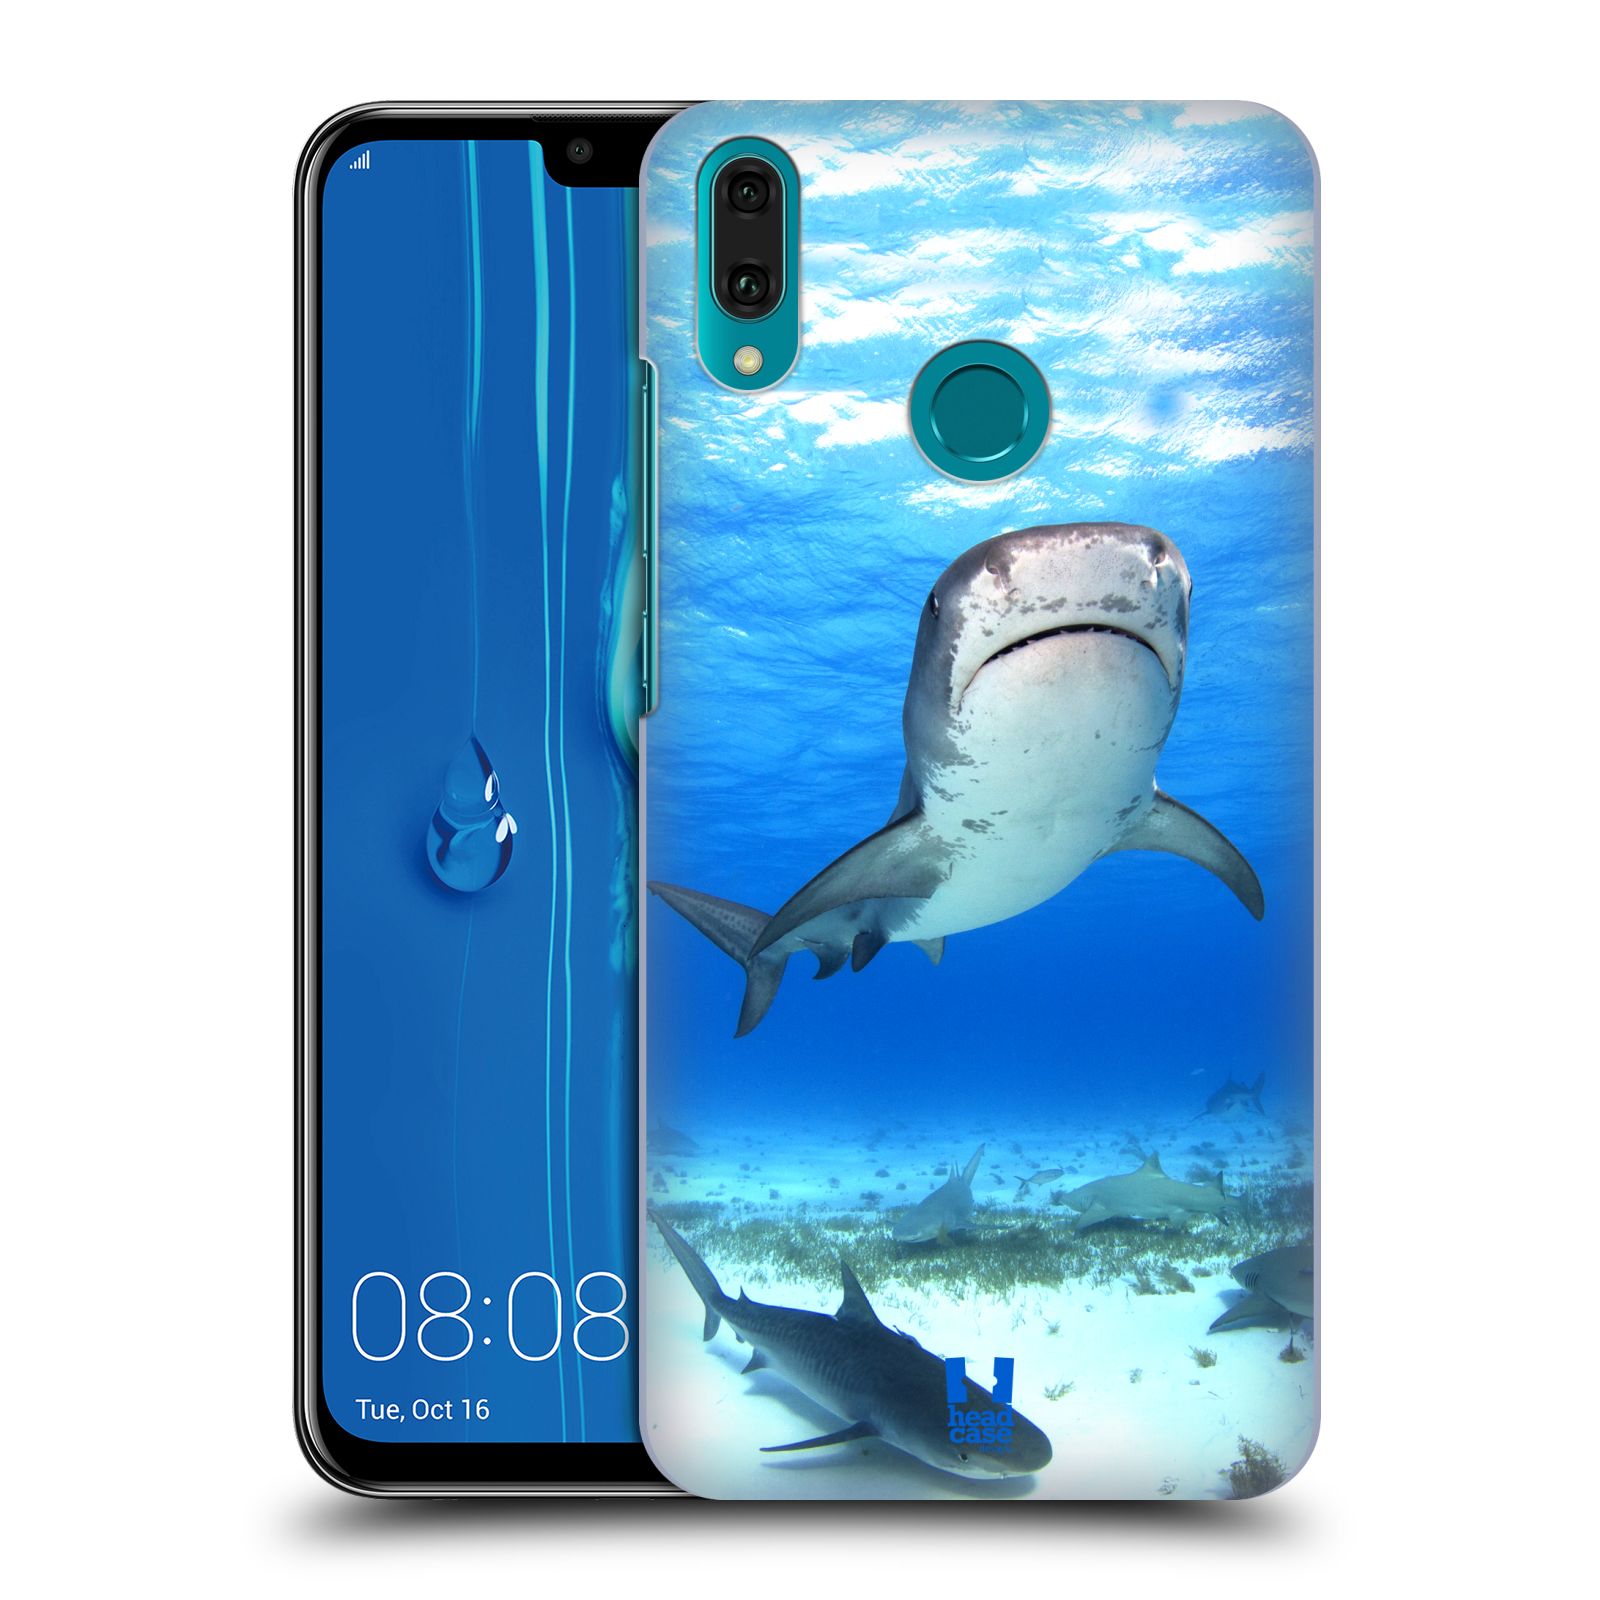 Pouzdro na mobil Huawei Y9 2019 - HEAD CASE - vzor slavná zvířata foto žralok tygří